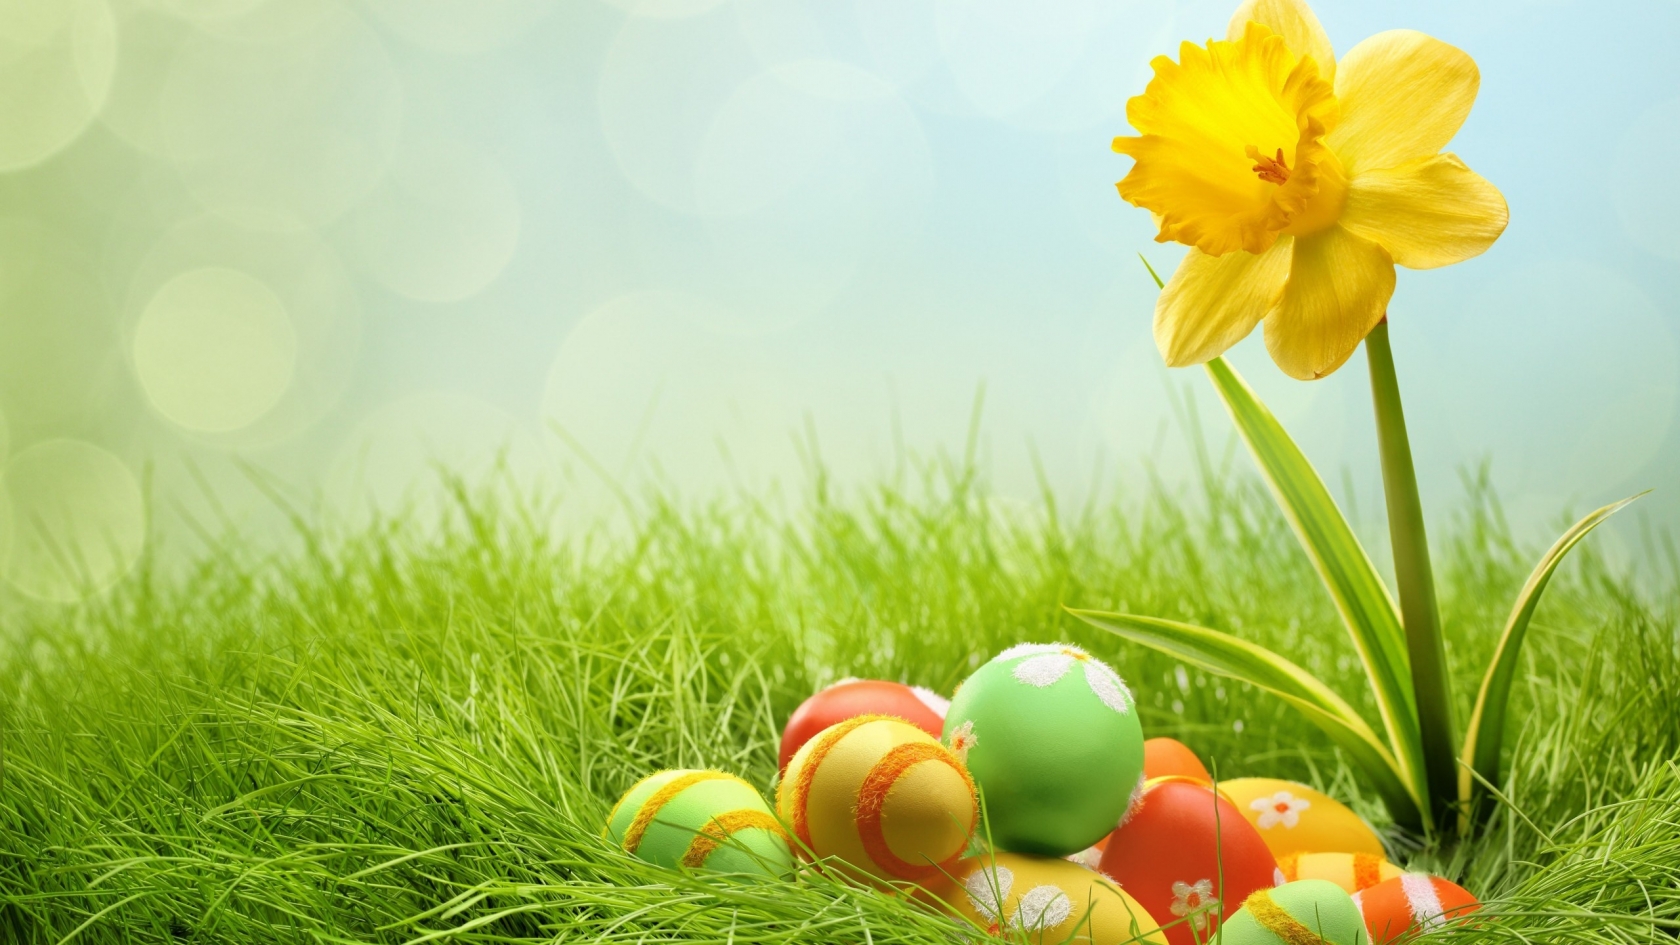 2014 Easter Eggs for 1680 x 945 HDTV resolution